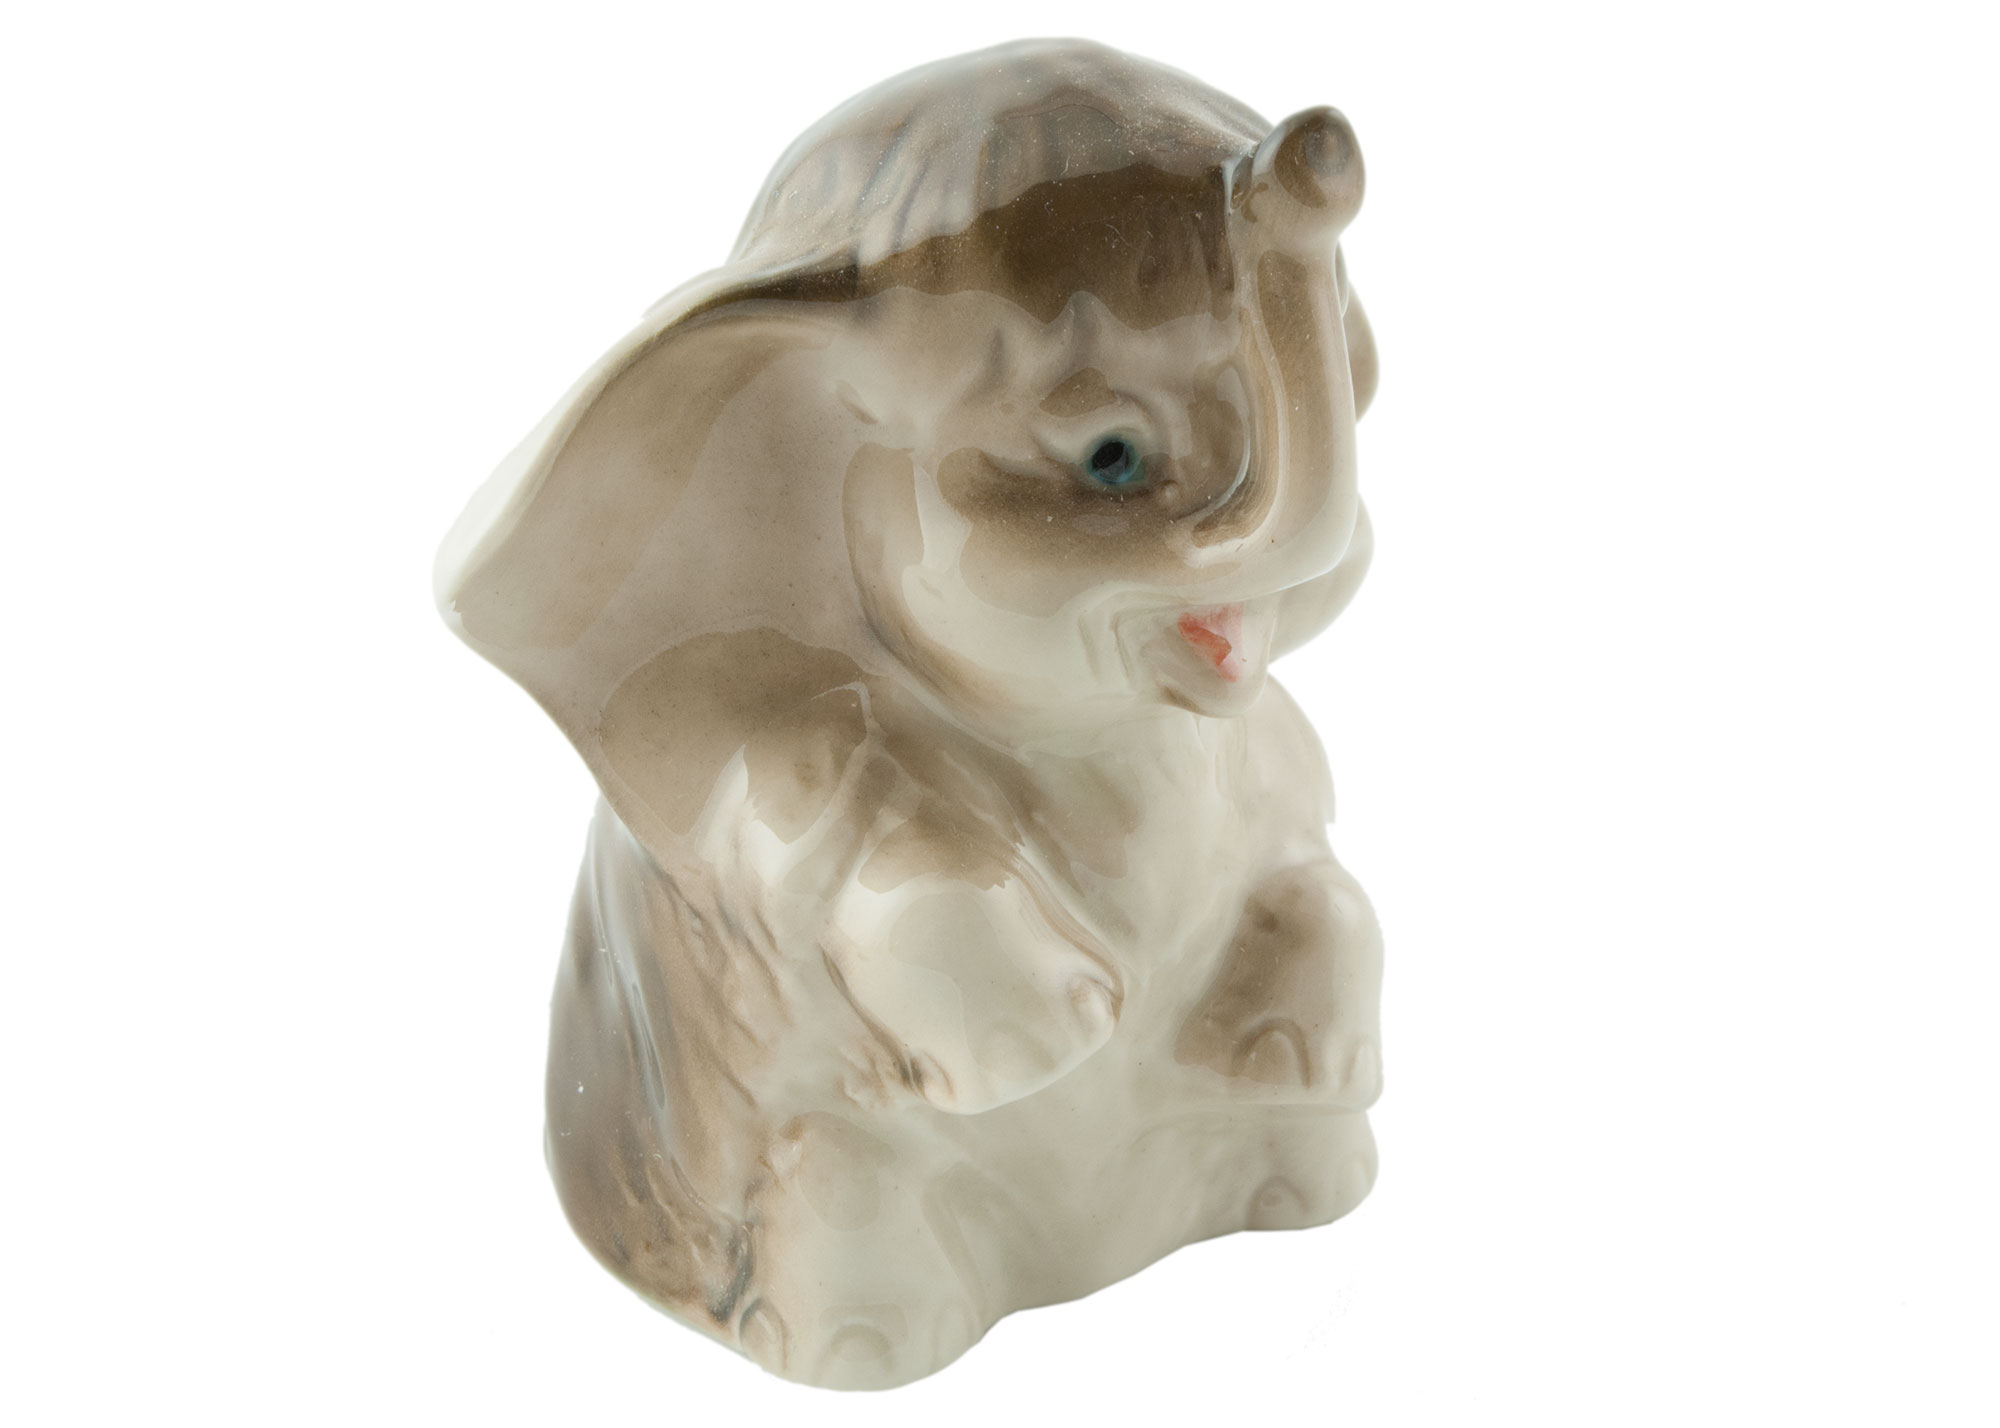 Buy Elephant Calf Porcelain Figurine at GoldenCockerel.com